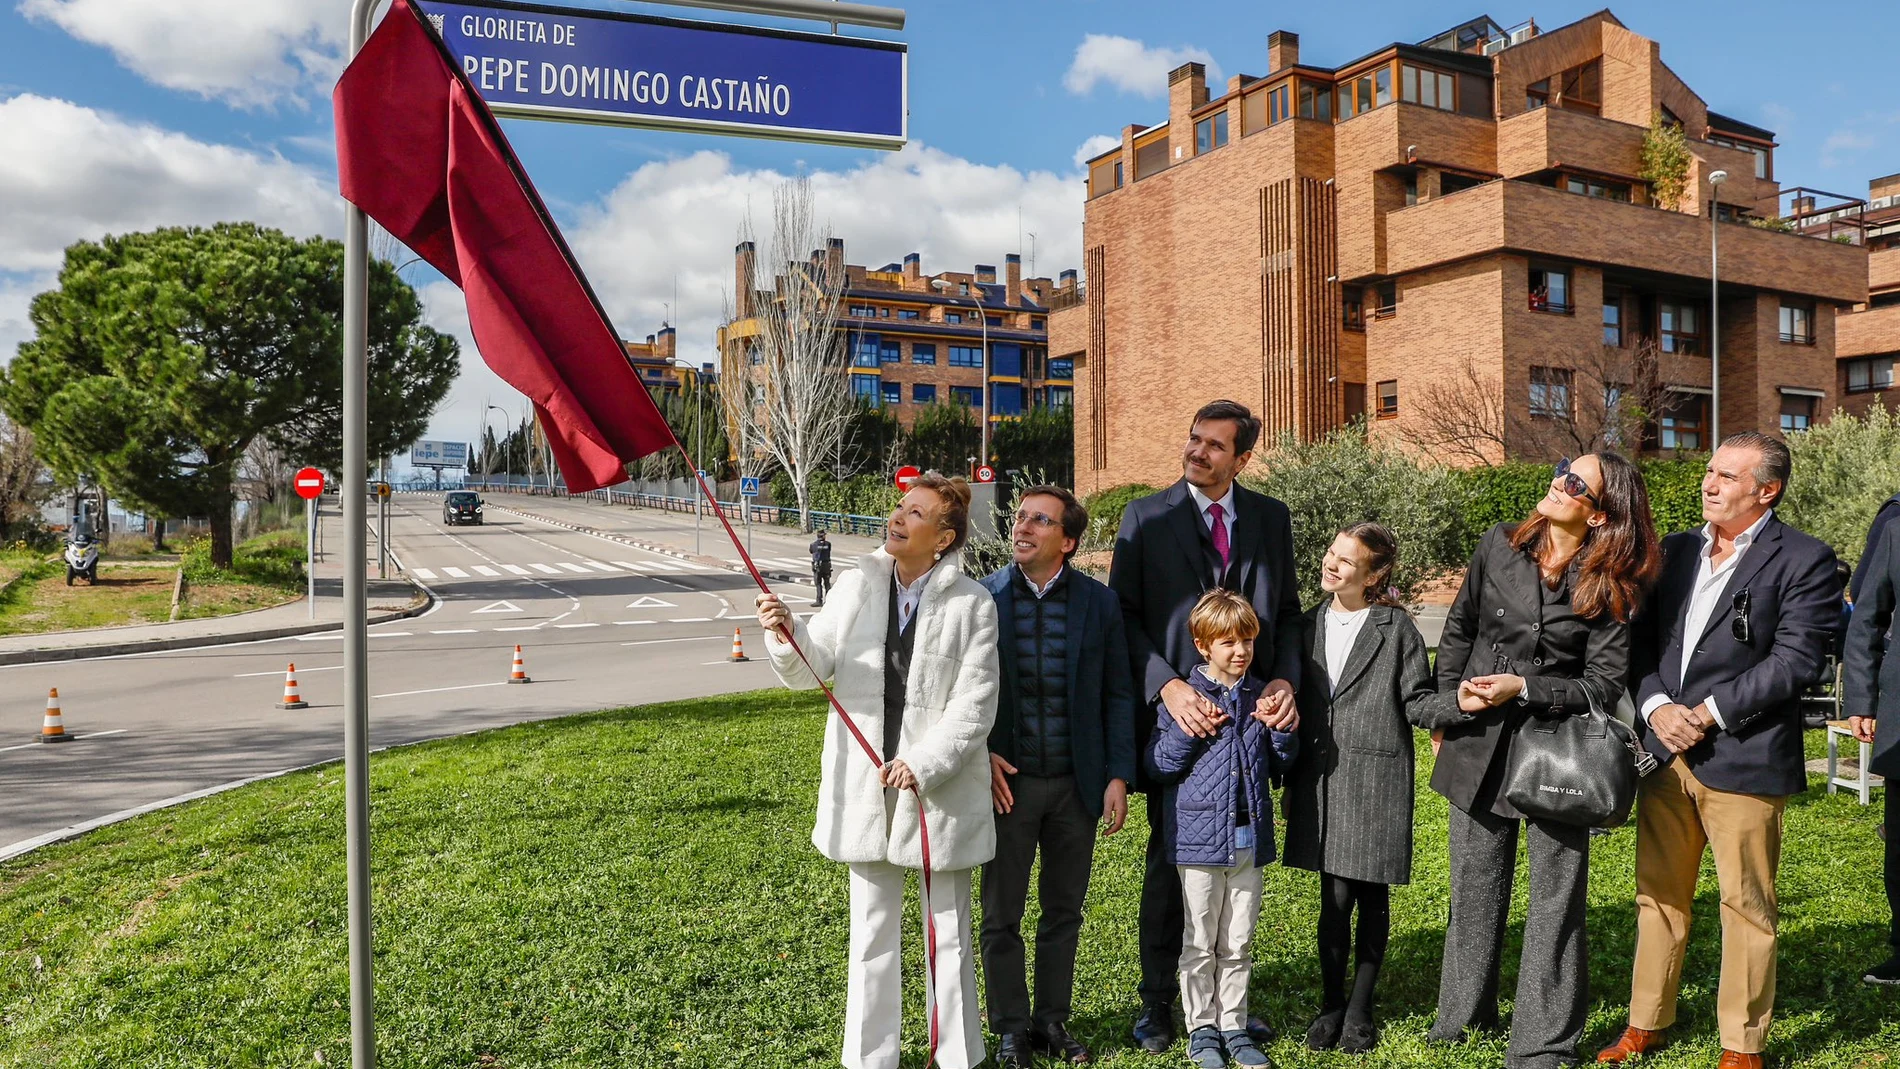 Familiares de Pepe Domingo Castaño junto al alcalde de Madrid, José Luis Martínez-Almedia, en el homenaje al periodista deportivo